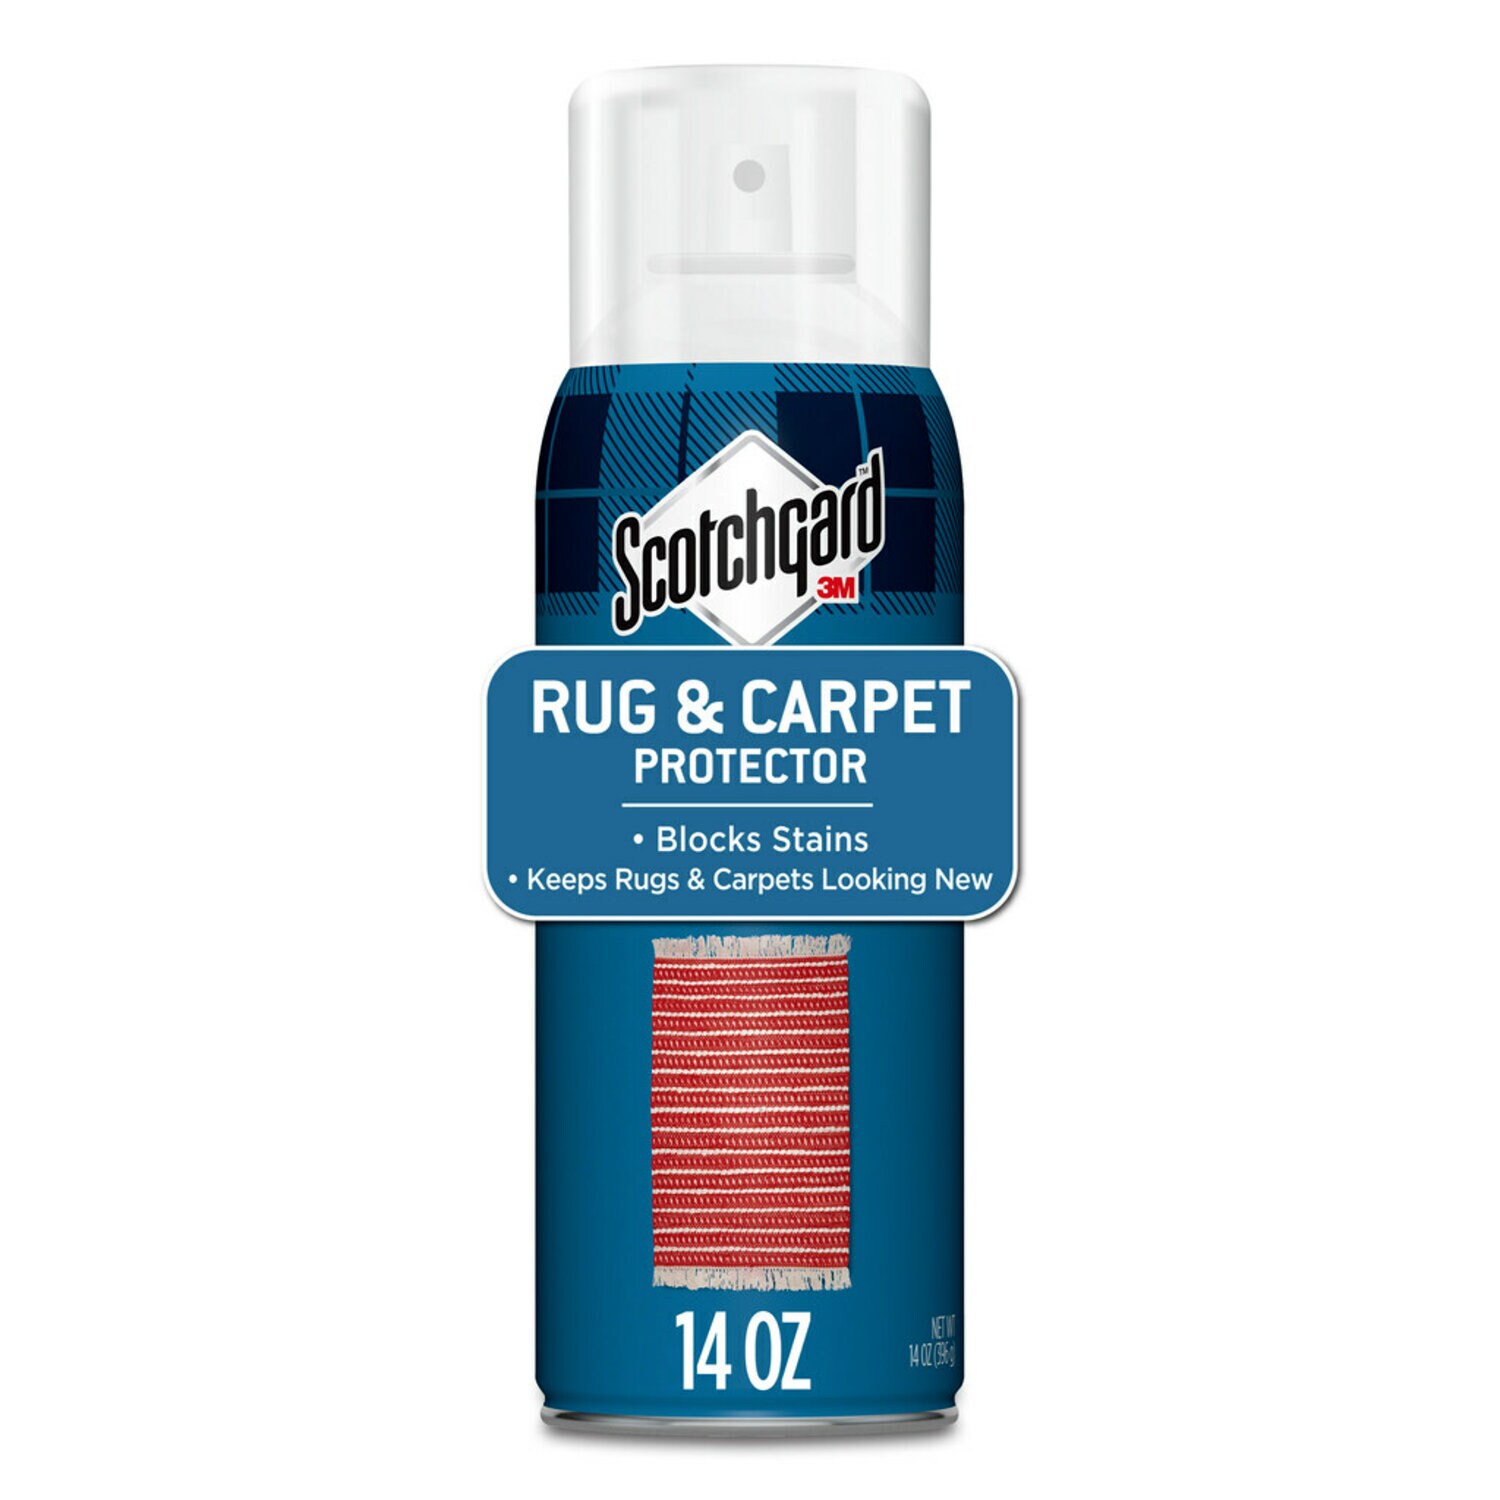 7100219894 - Scotchgard Rug & Carpet Protector 4406-14 PF, 14 oz. (397 g), 6/1